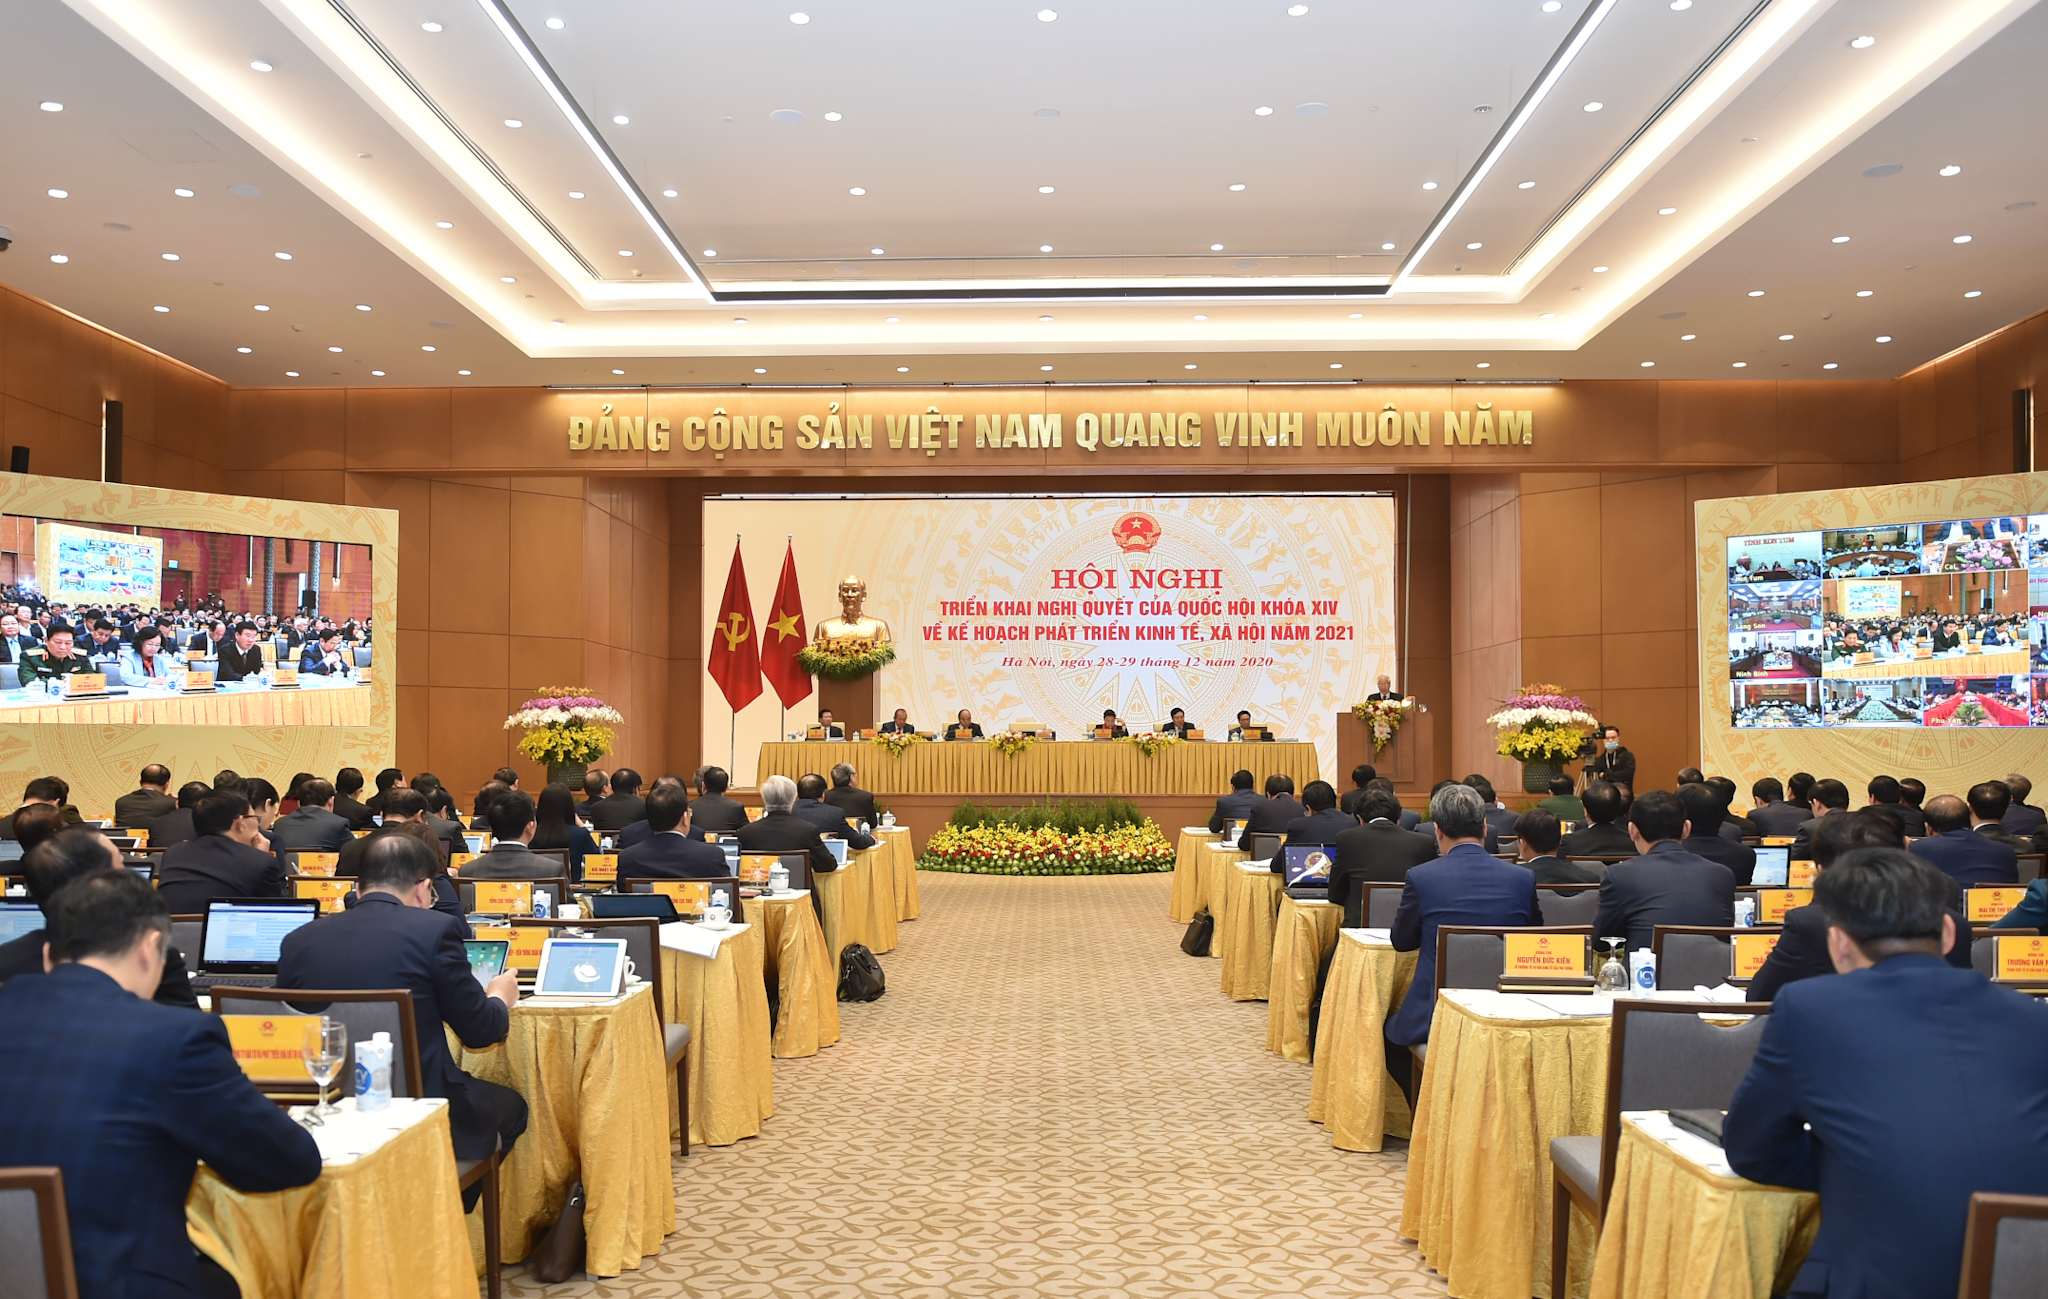 Hội nghị trực tuyến toàn quốc của Chính phủ với địa phương triển khai Nghị quyết của Quốc hội khóa XIV về kế hoạch phát triển kinh tế-xã hội năm 2021 (Ảnh: VGP/Quang Hiếu)